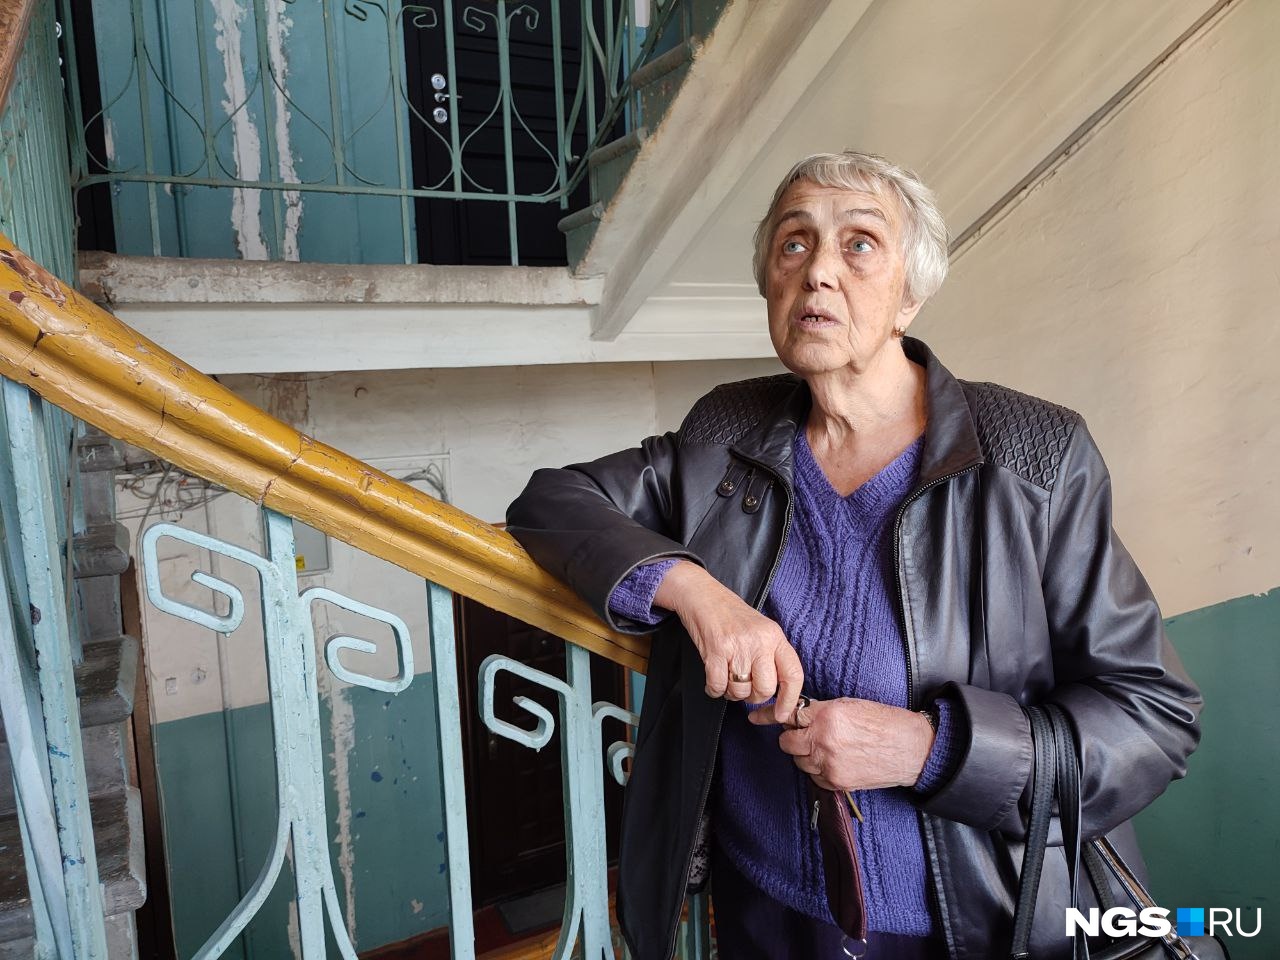 Ольга Федоровна Краснова живет в доме 76 лет, переехала сюда с родителями в трехлетнем возрасте. Говорит, что помнит еще дровяные печи на кухнях и хранившиеся в подвалах дрова. При всех накопившихся недостатках считает дом хорошим